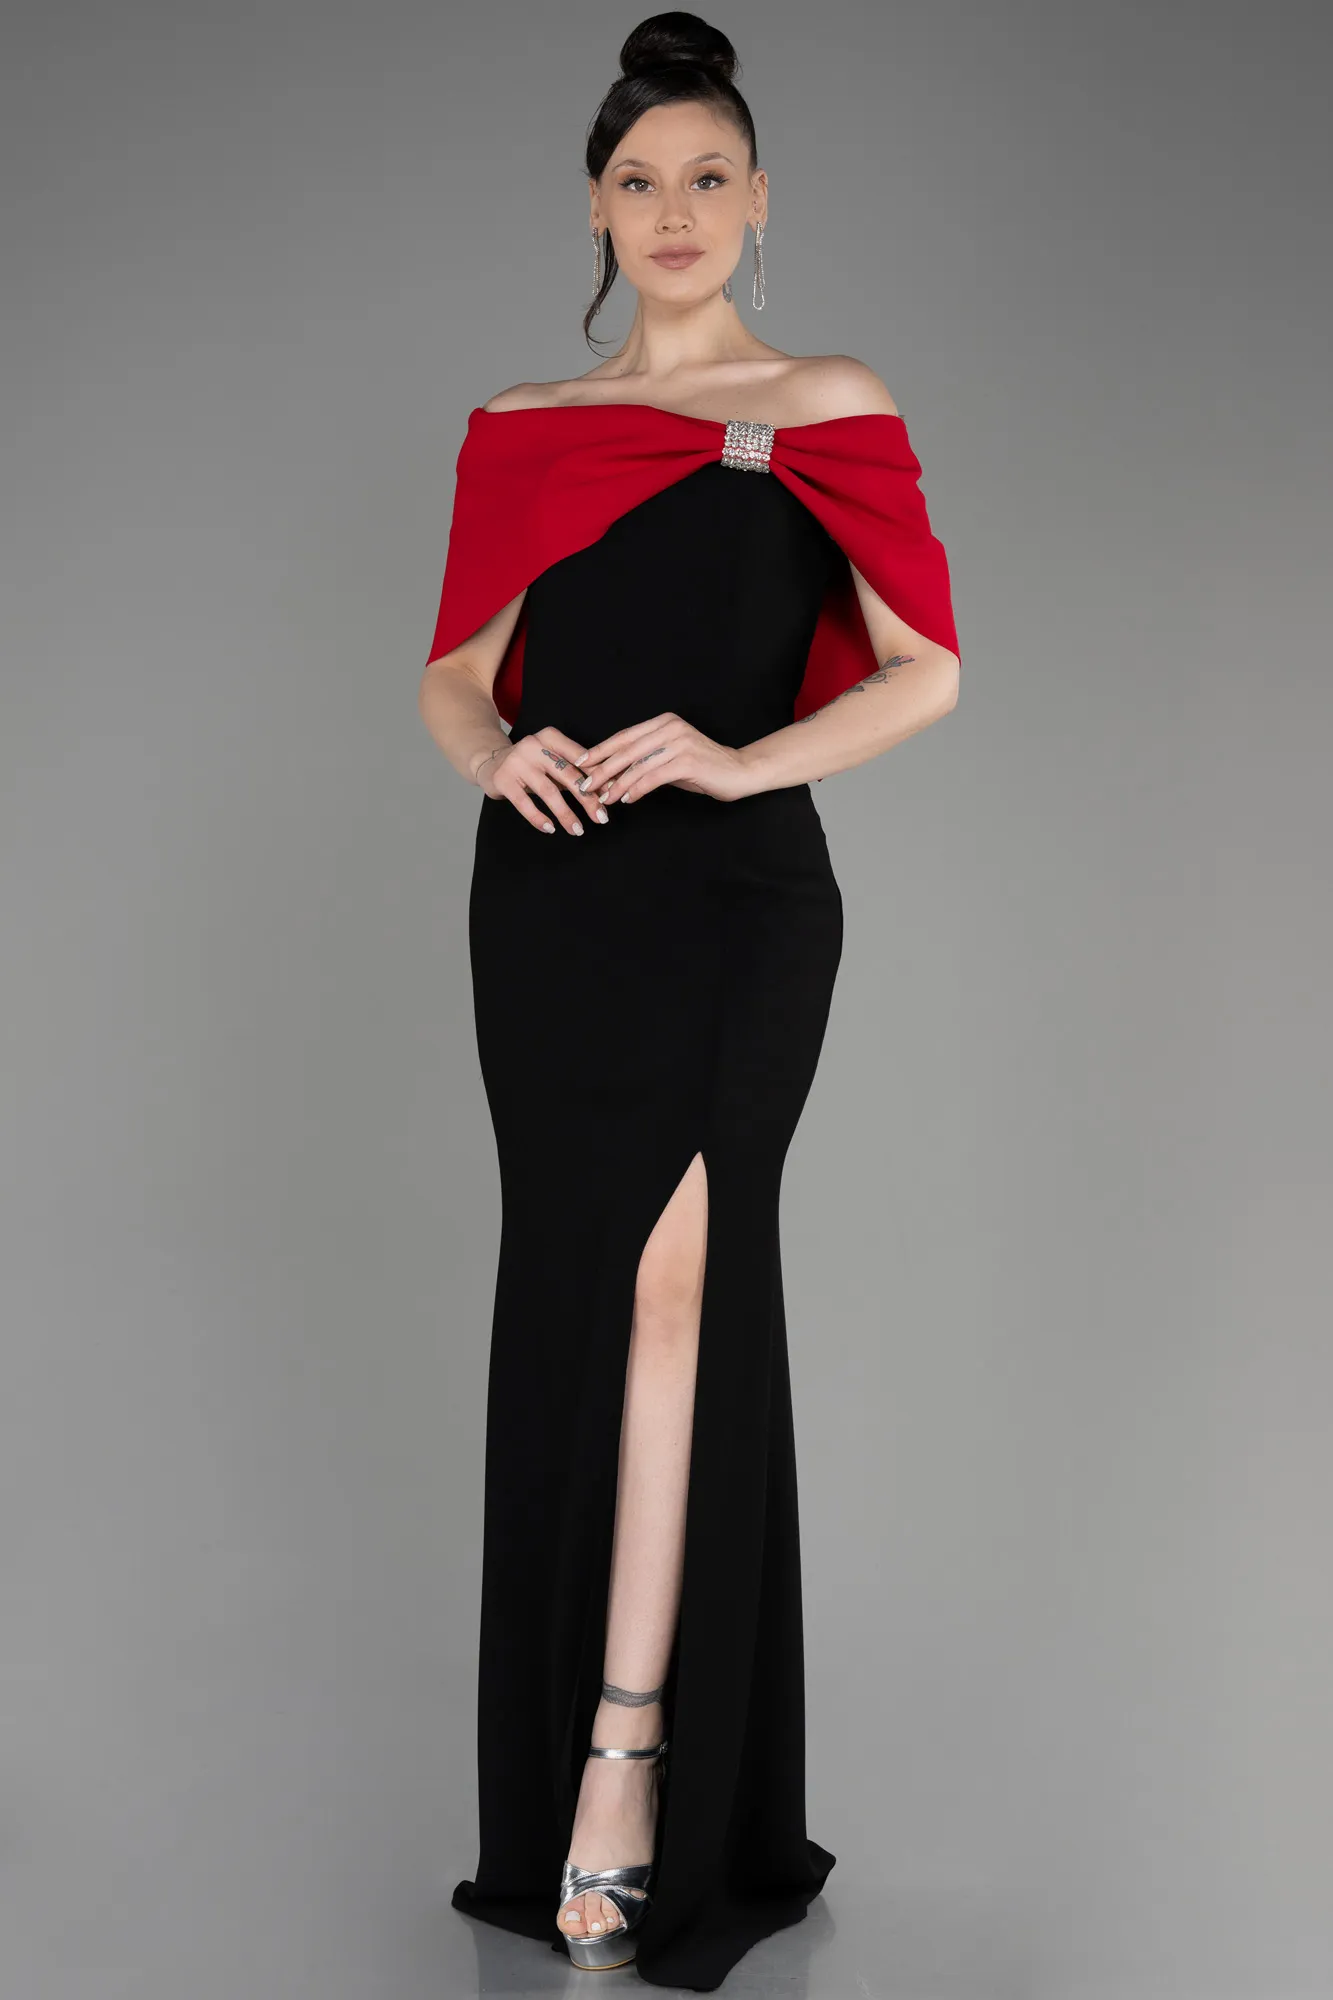 Black-Red-Long Evening Dress ABU3775